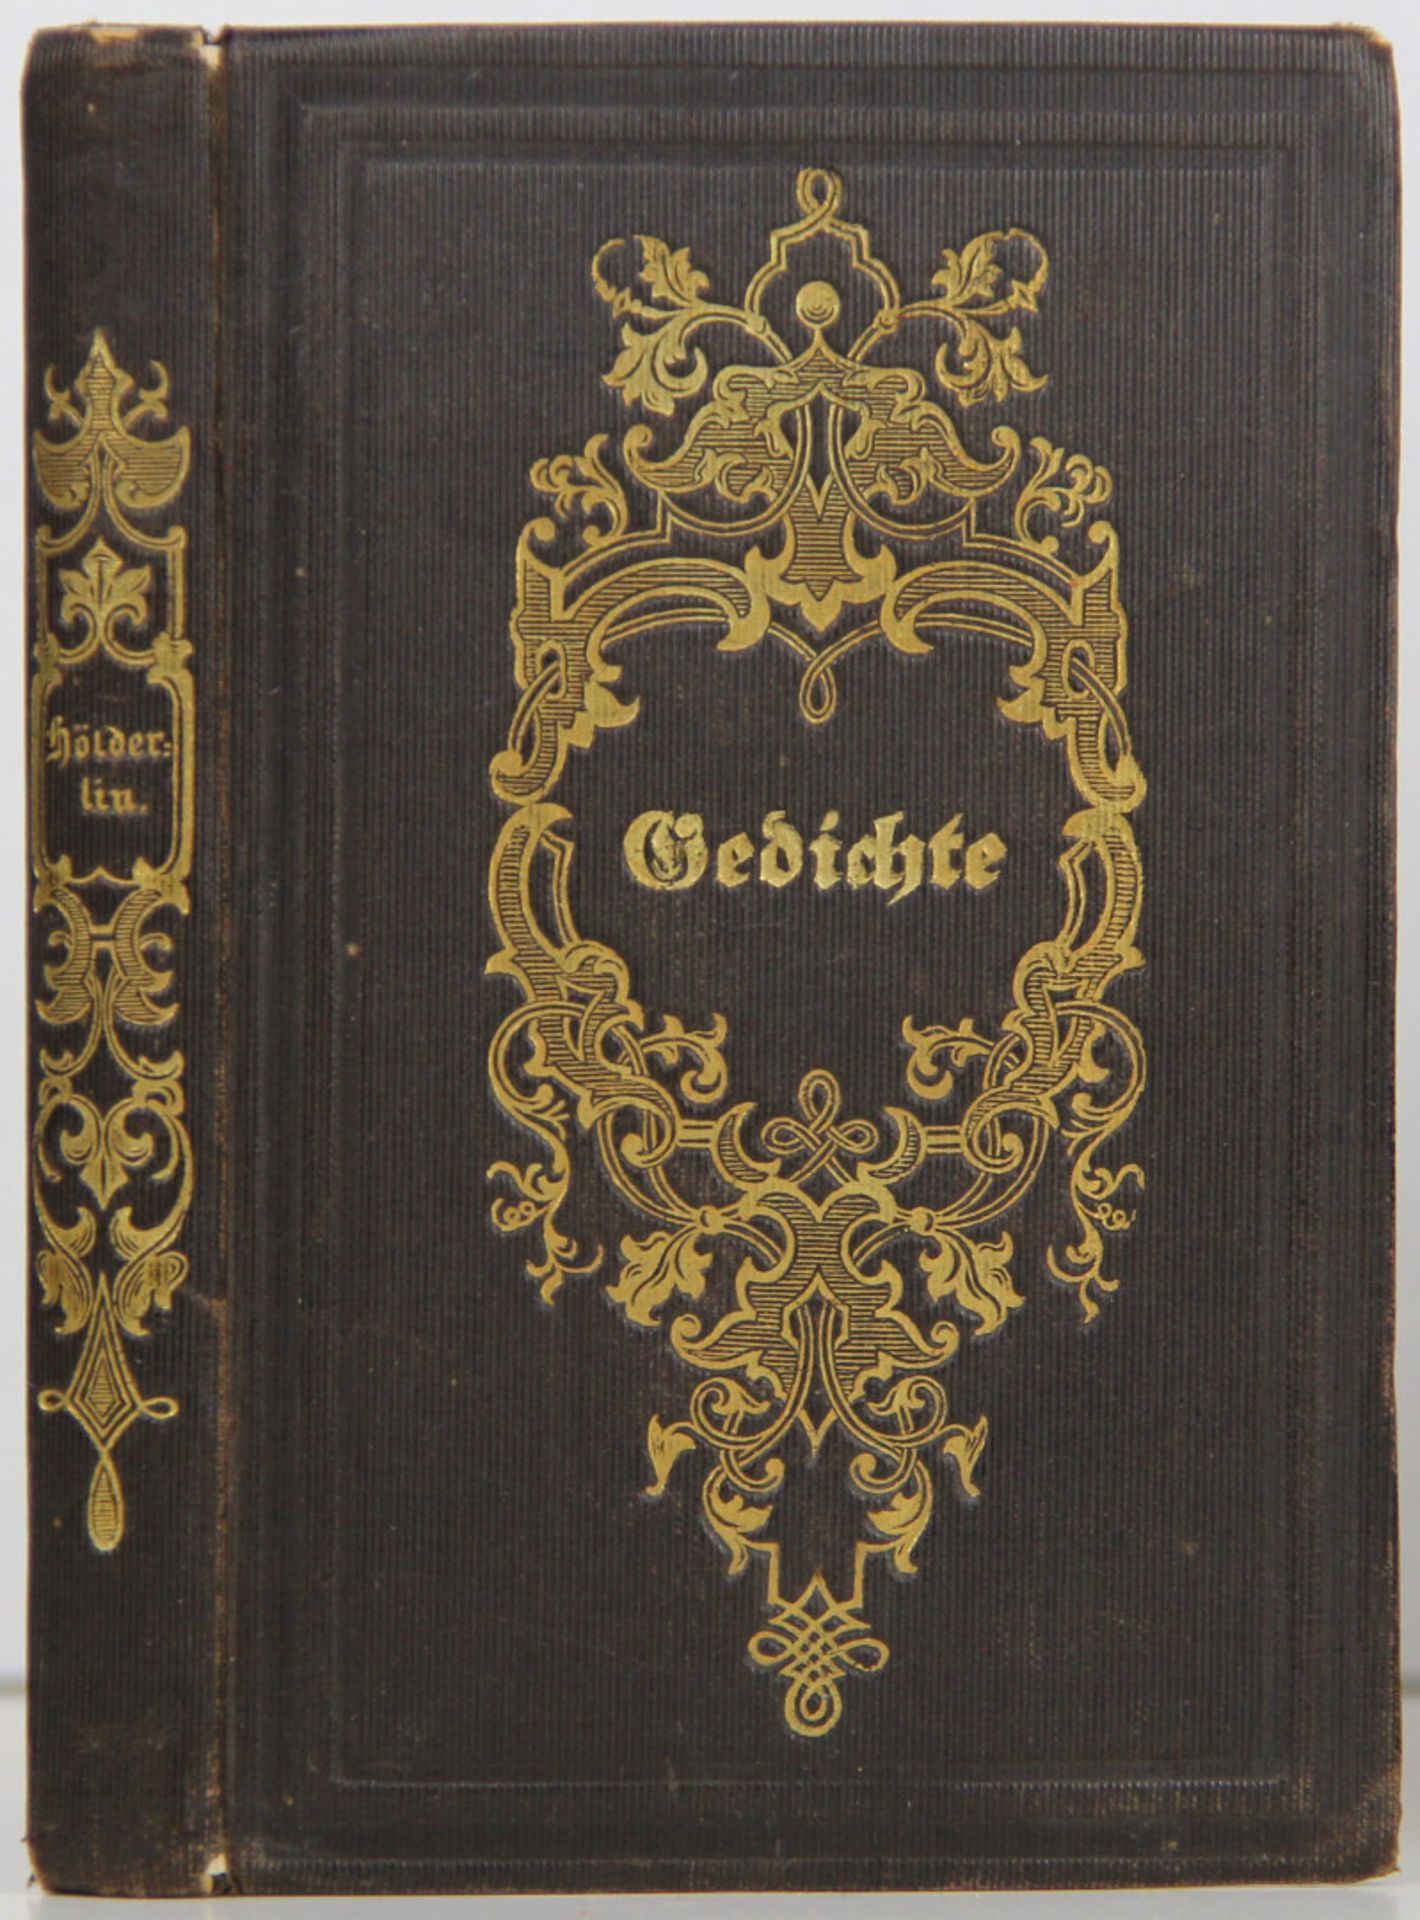  Hölderlin, Friedrich: Gedichte.